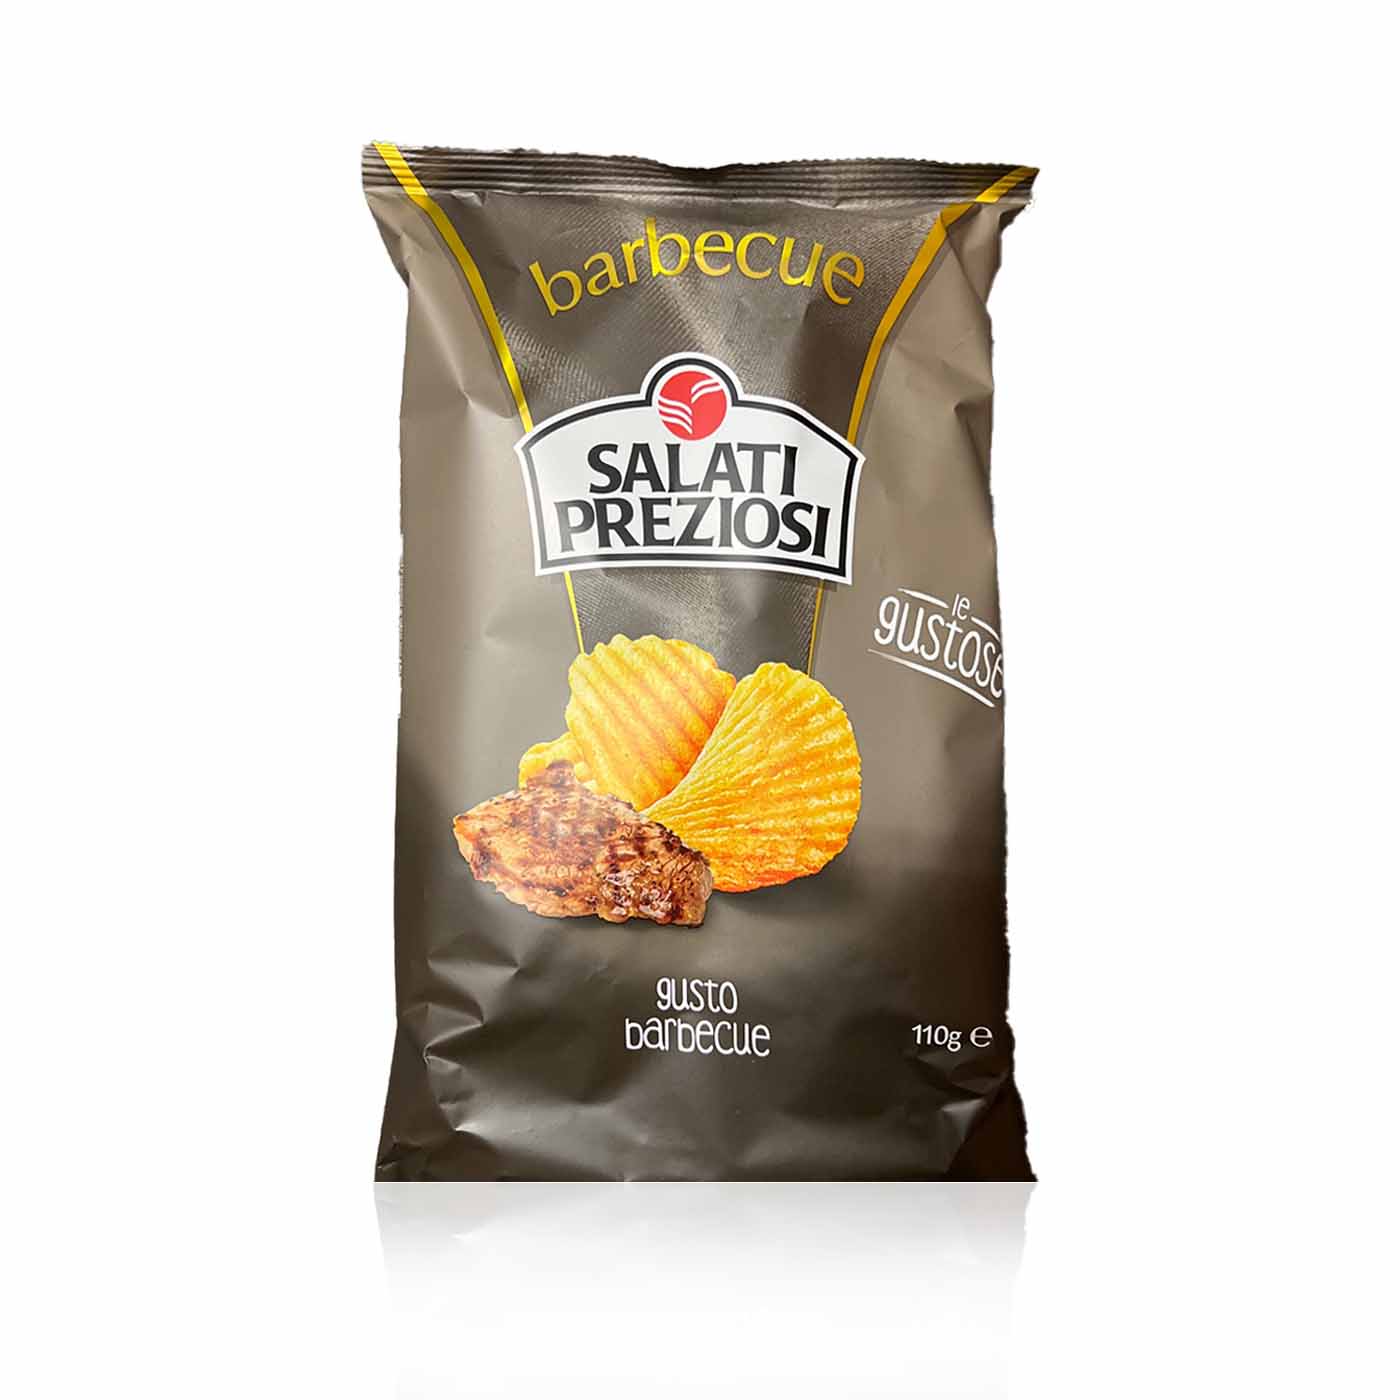 SALATI PREZIOSI Patatine Barbecue- Chips geriffelt Barbecue- 0,11kg